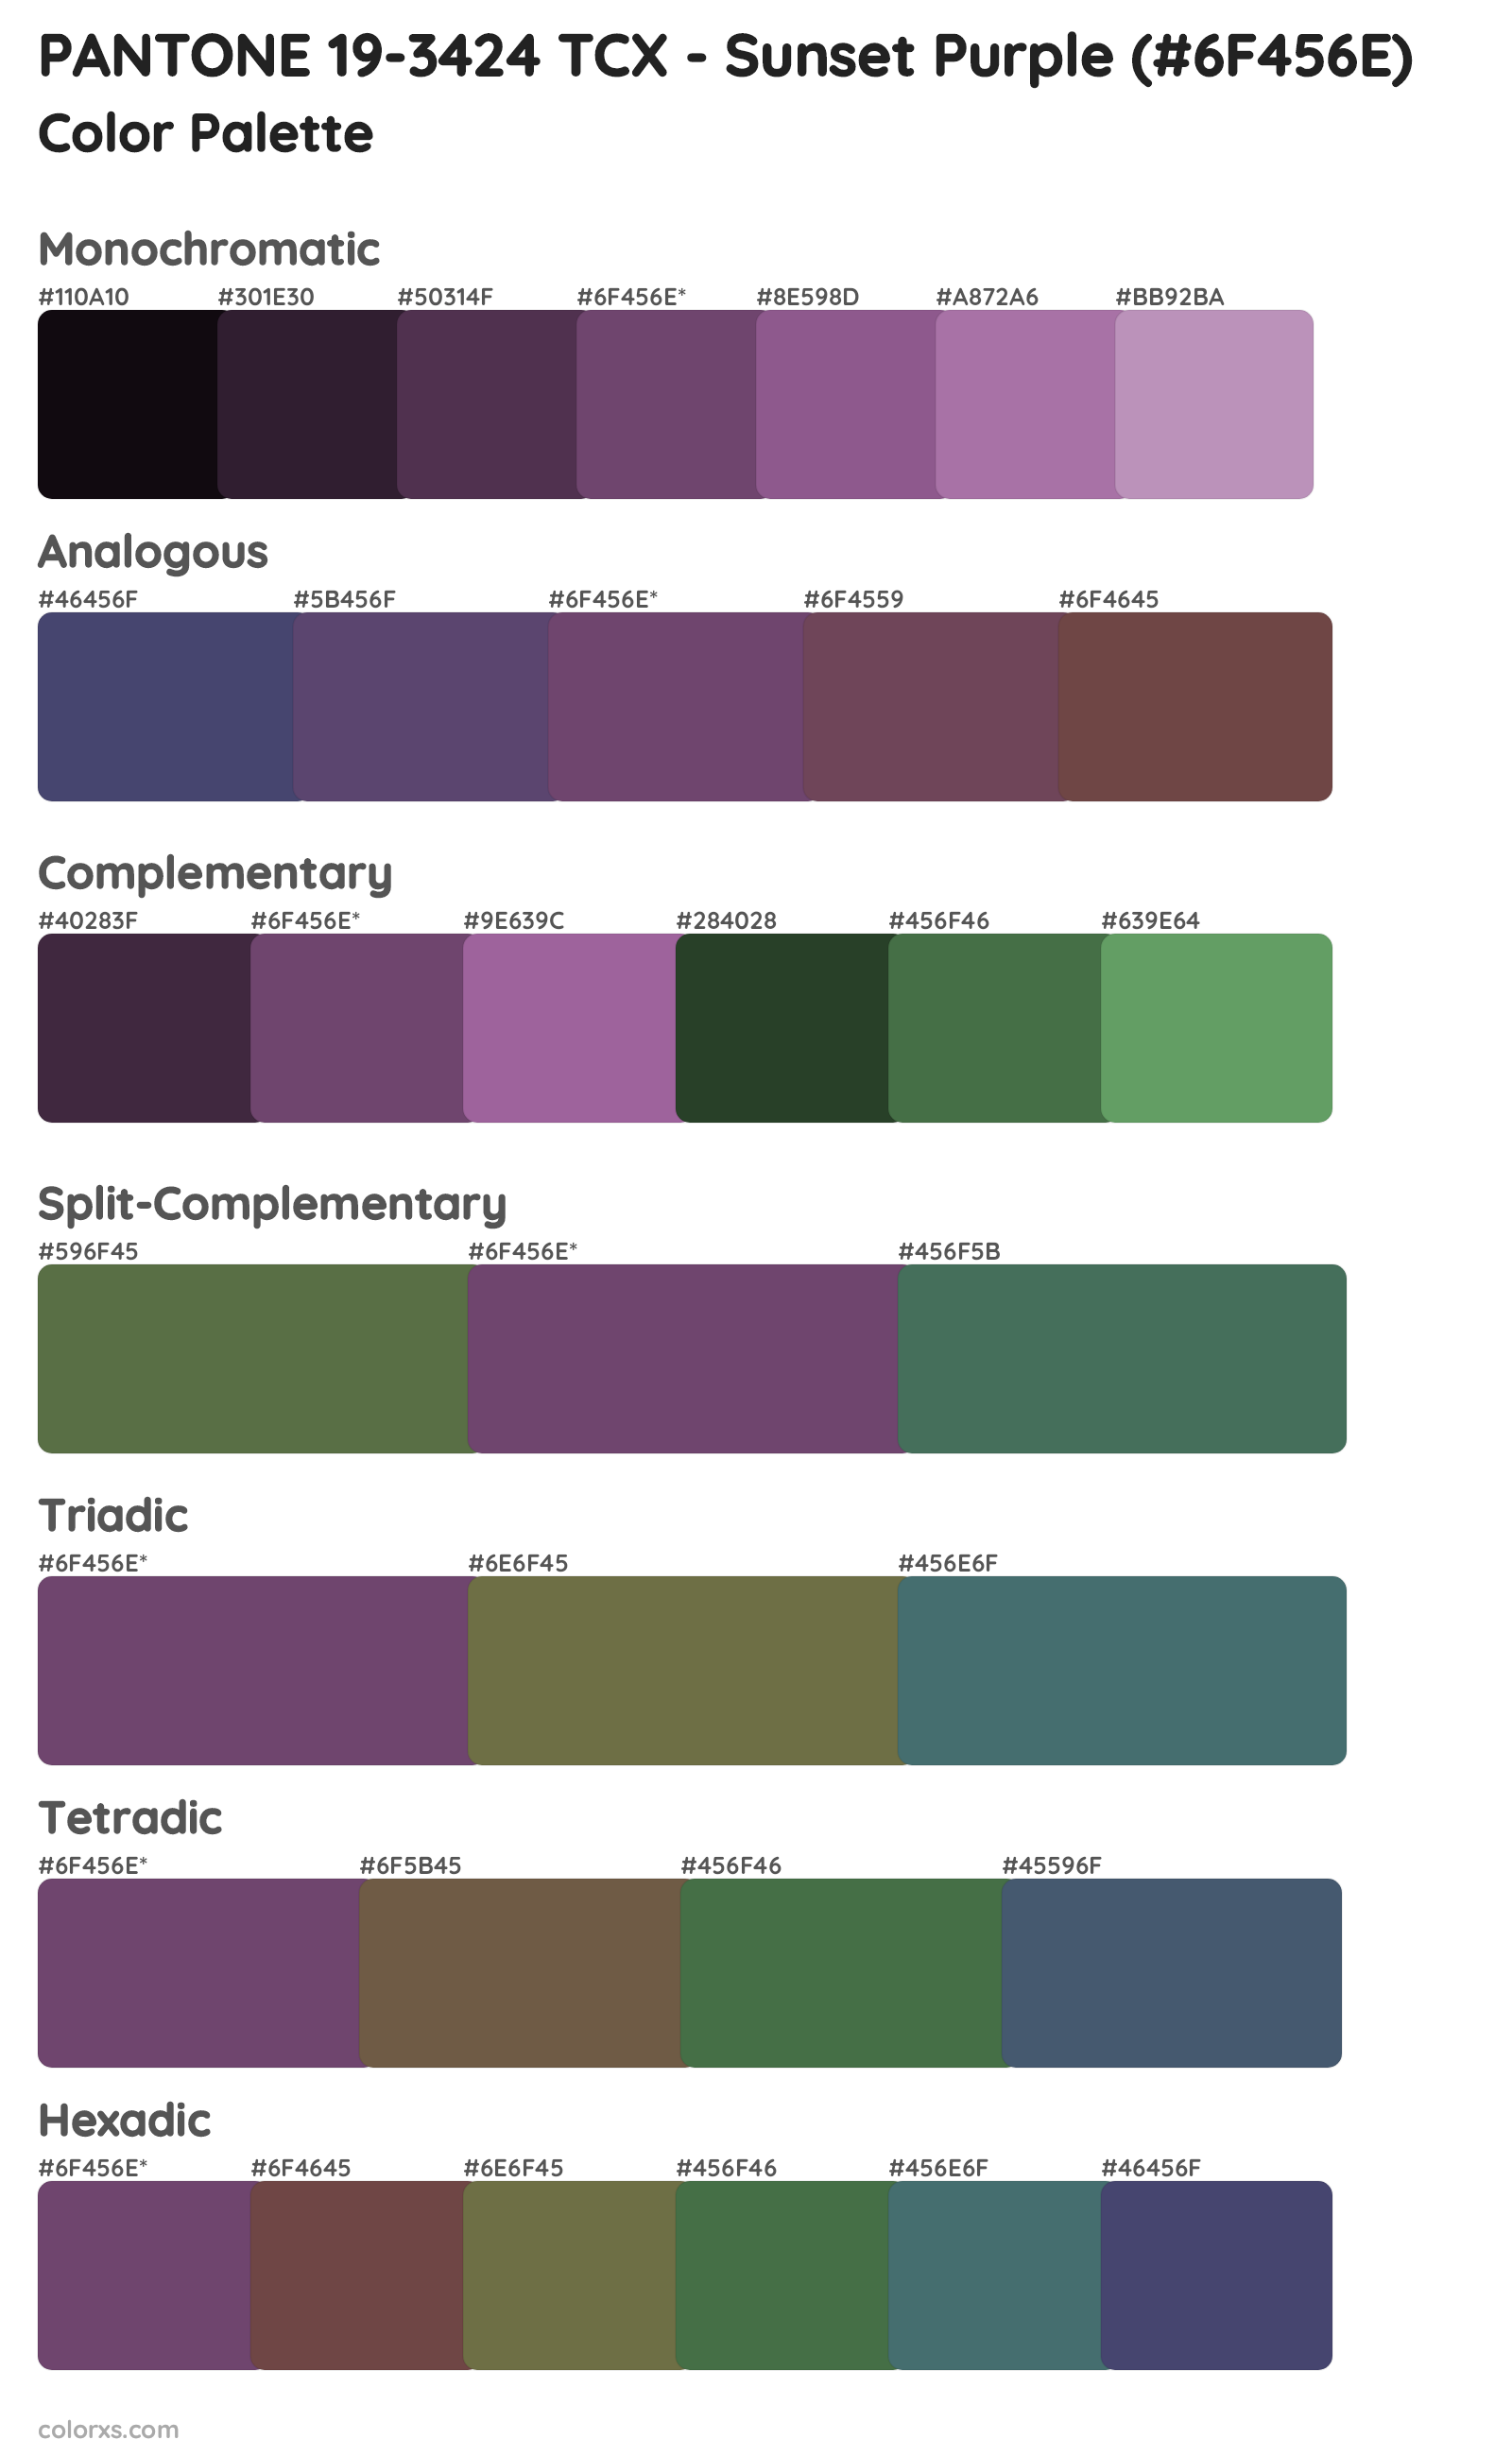 PANTONE 19-3424 TCX - Sunset Purple Color Scheme Palettes